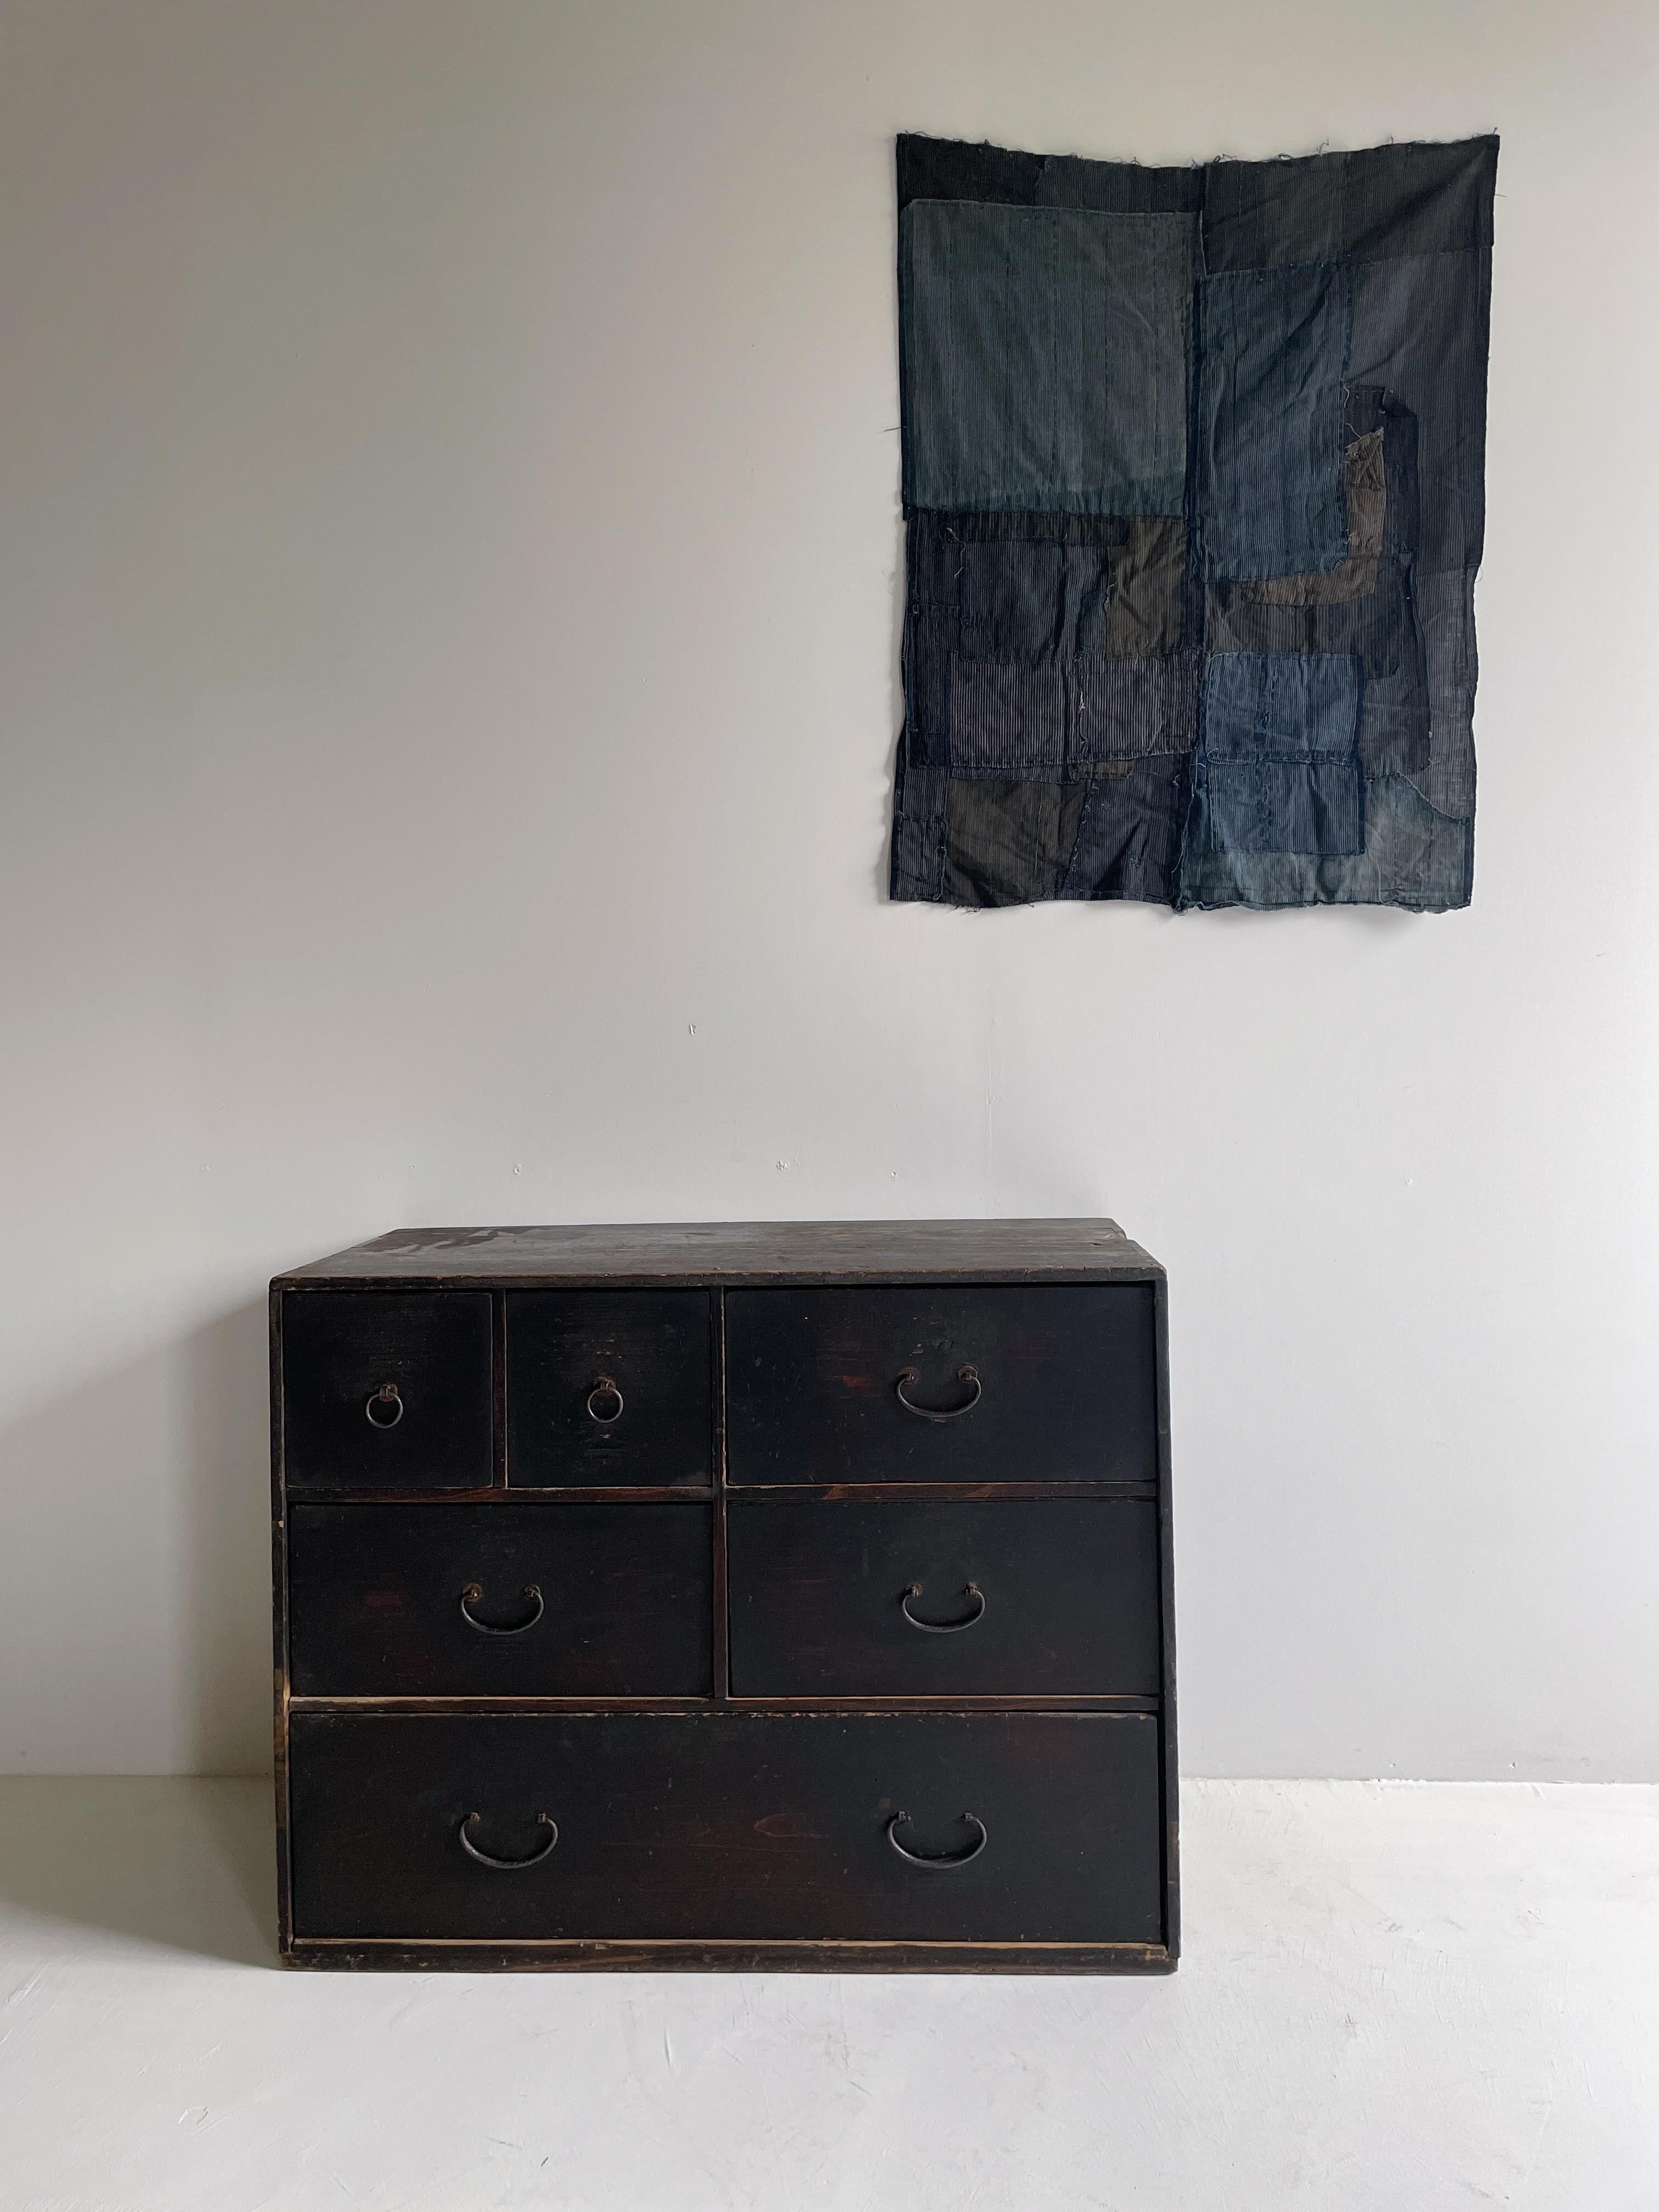 Sehr alter großer Schubladenschrank aus Japan.
Die Möbel stammen aus der Meiji-Periode (1860-1900er Jahre).
MATERIAL ist Zedernholz. Die Griffe sind aus Eisen gefertigt.

Das Design ist einfach und schlank.
Es ist ein sehr schönes Möbelstück mit